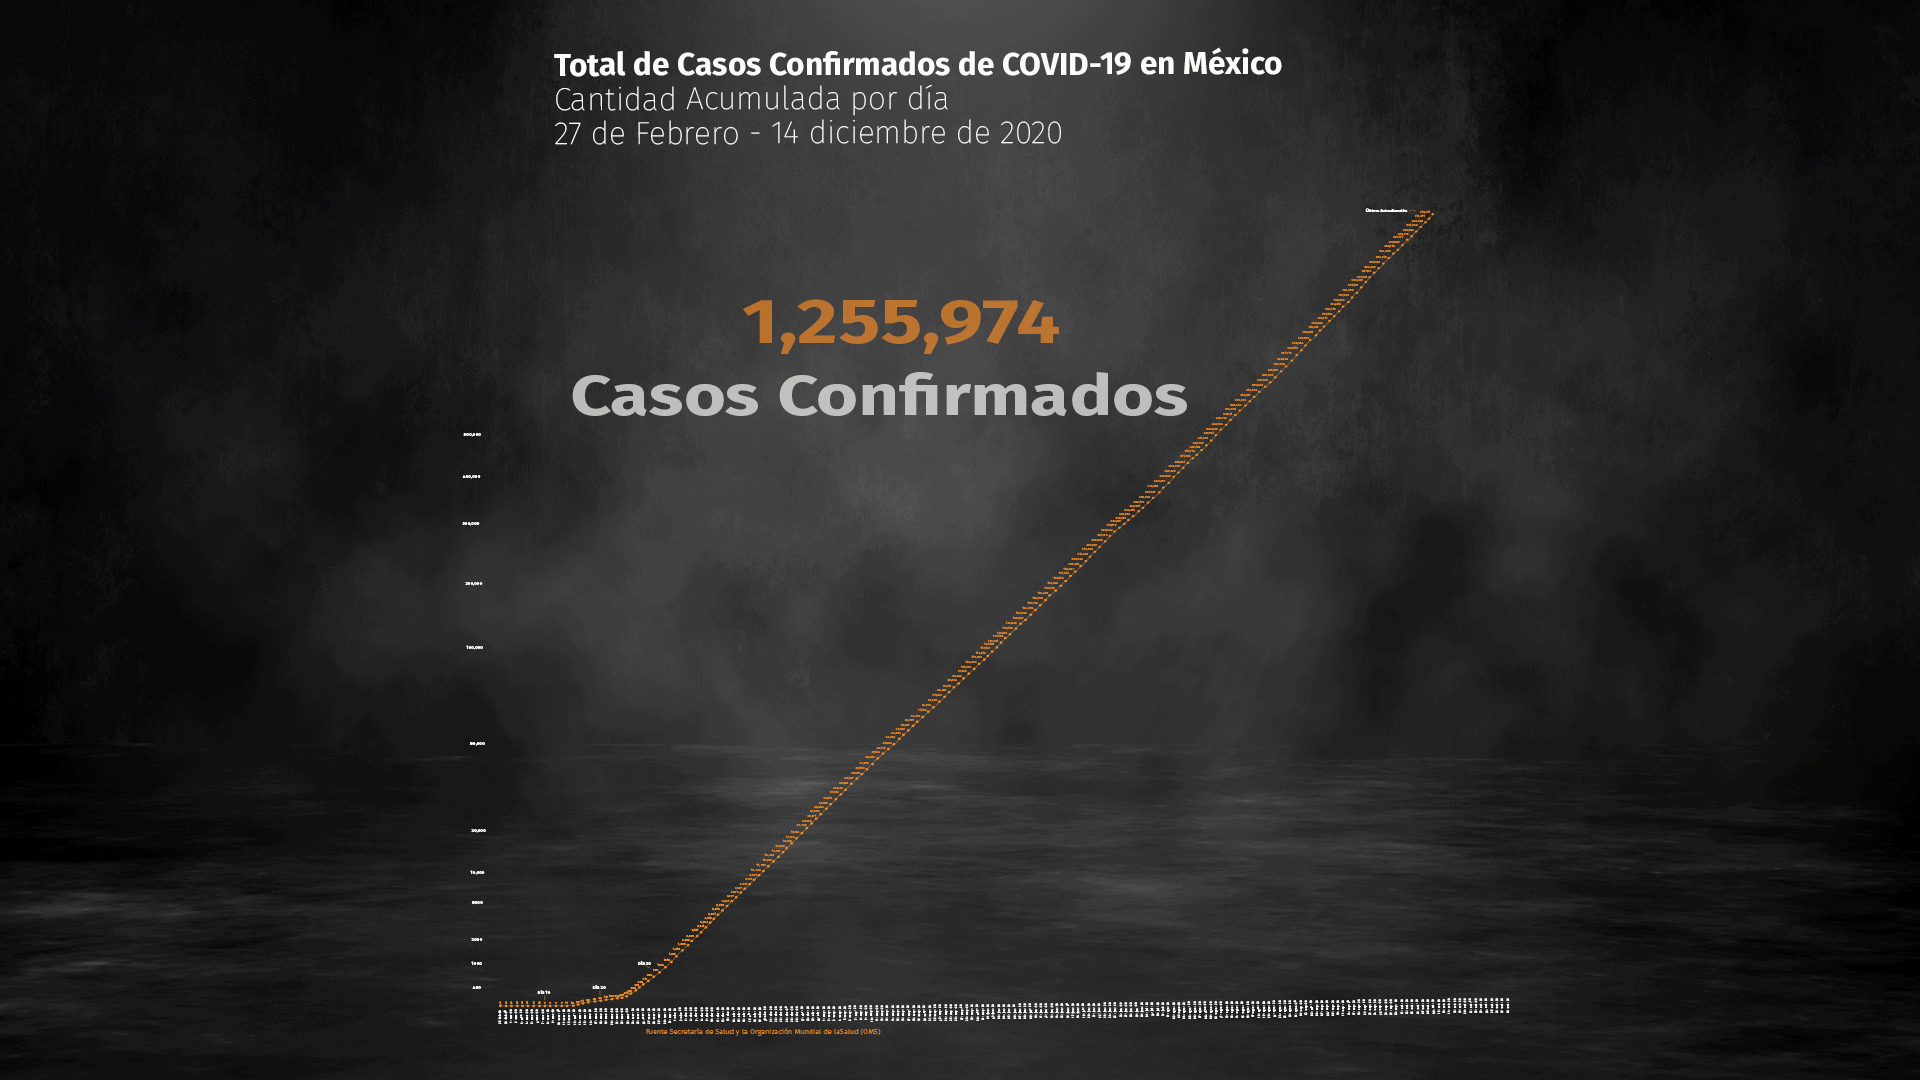 La SSa informó que hasta este lunes 16 de noviembre se registraron 1,255,974 casos positivos y 114,298 fallecimientos por COVID-19 en México (Foto: Ilustración: Steve Allen)

